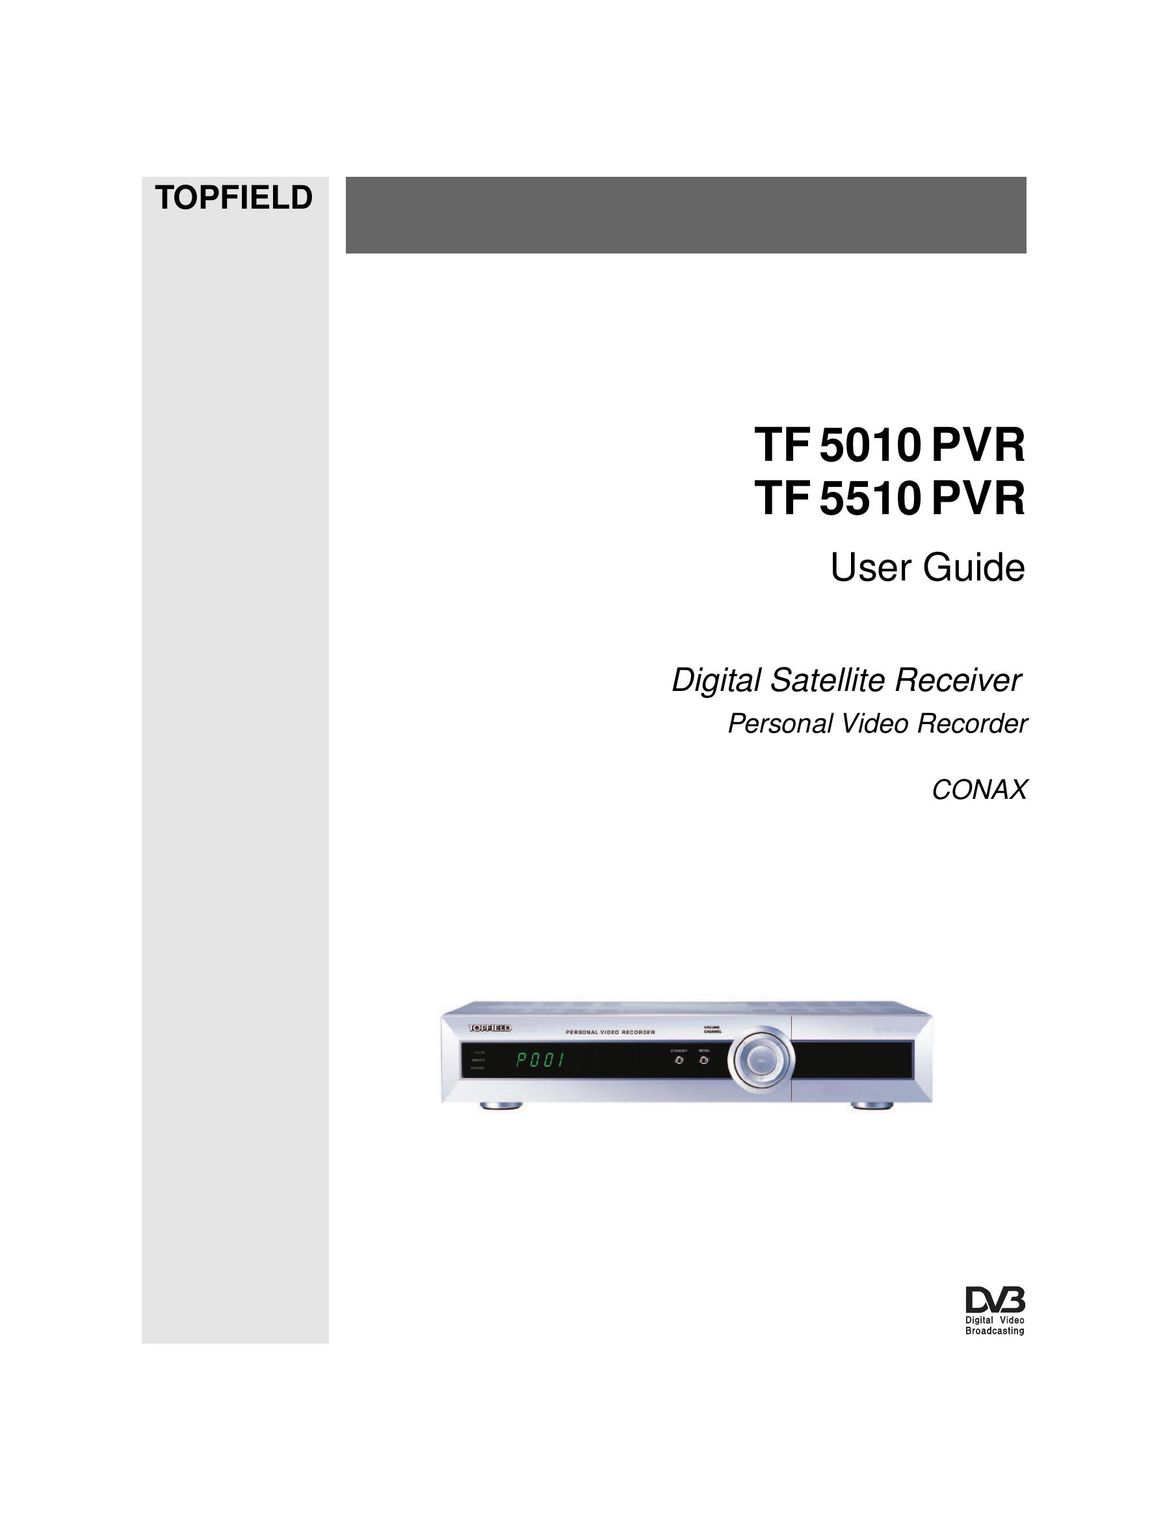 Topfield TF 5510 PVR DVR User Manual